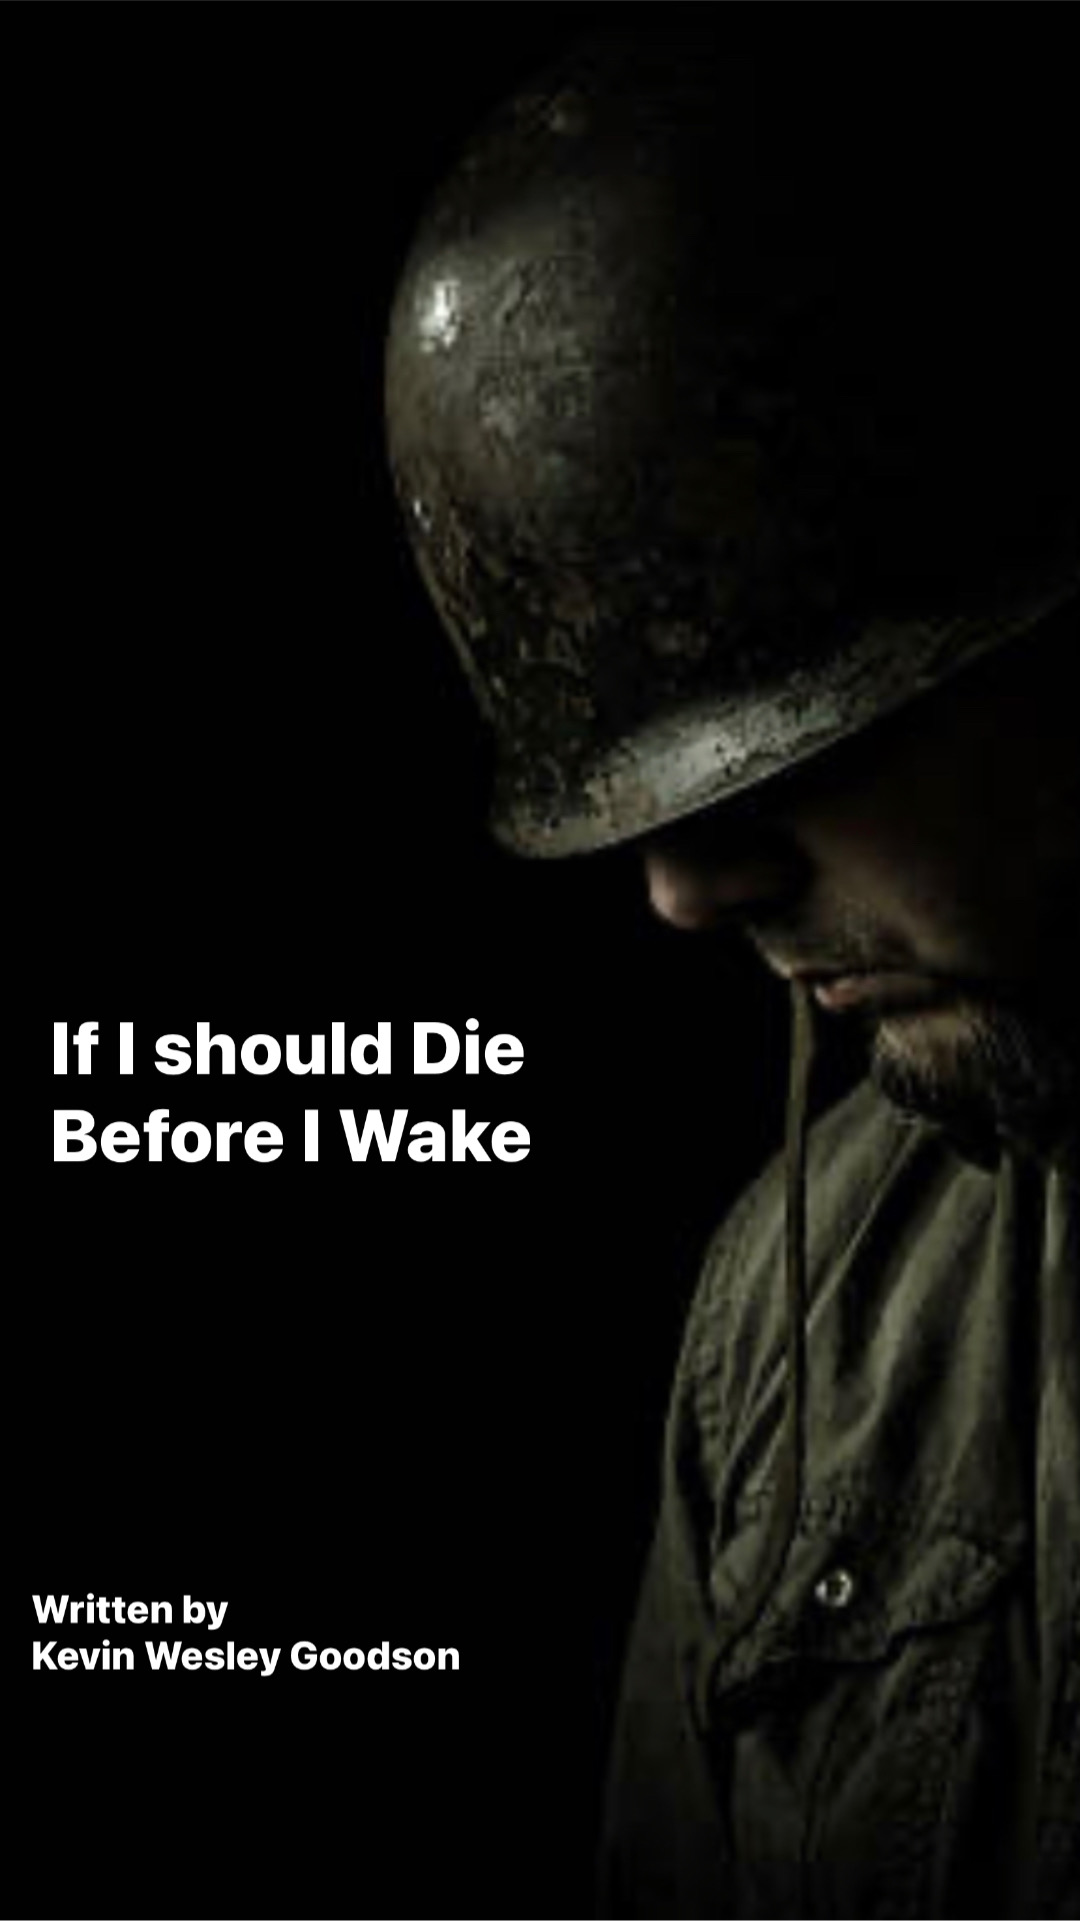 IF I SHOULD DIE BEFORE I WAKE